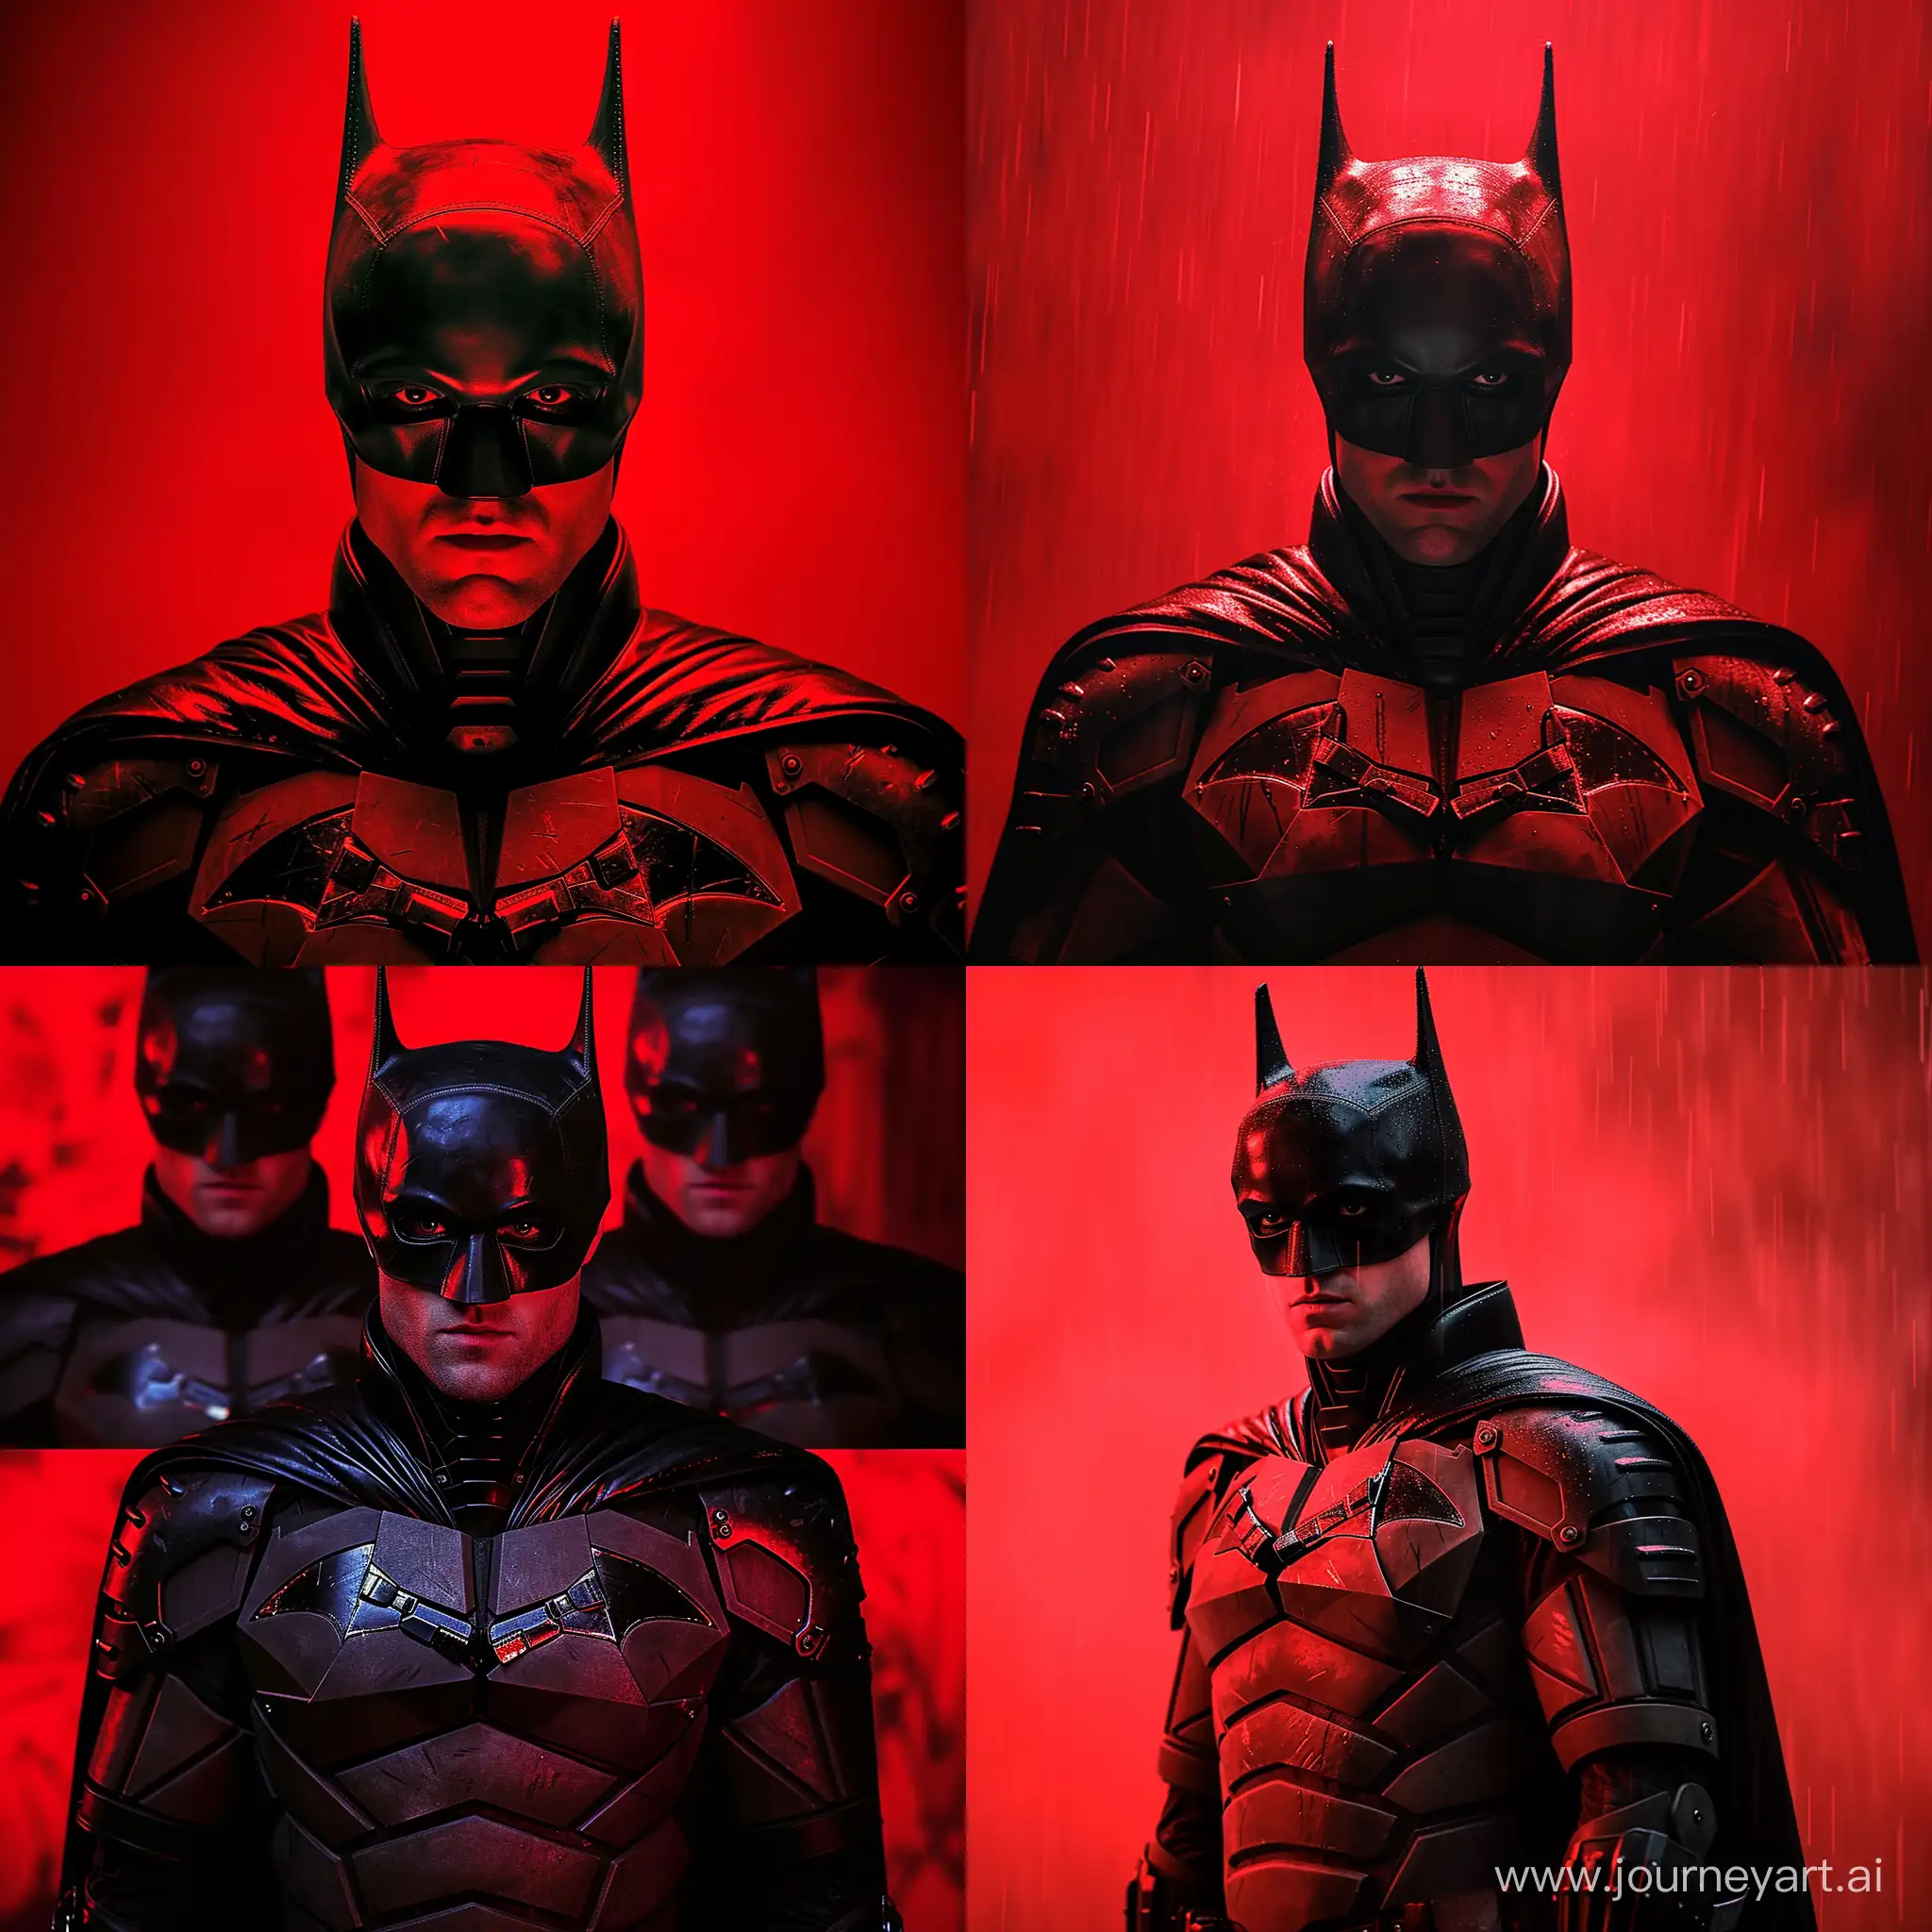 Robert-Pattinson-as-Batman-in-Red-Suit-Portrait